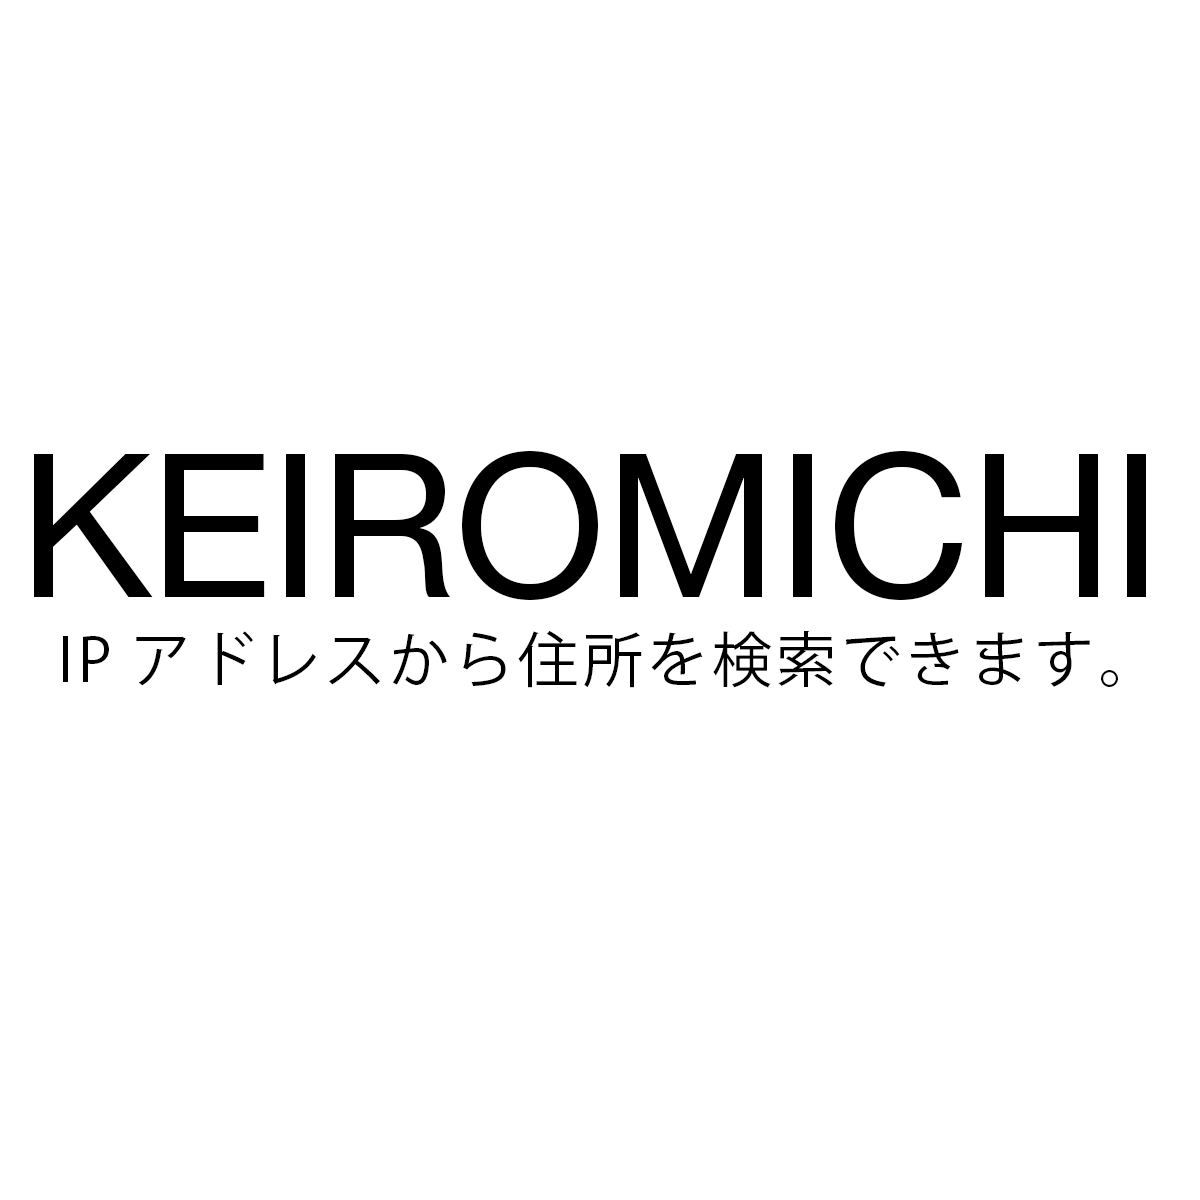 Keiromichi Ipアドレスから住所検索